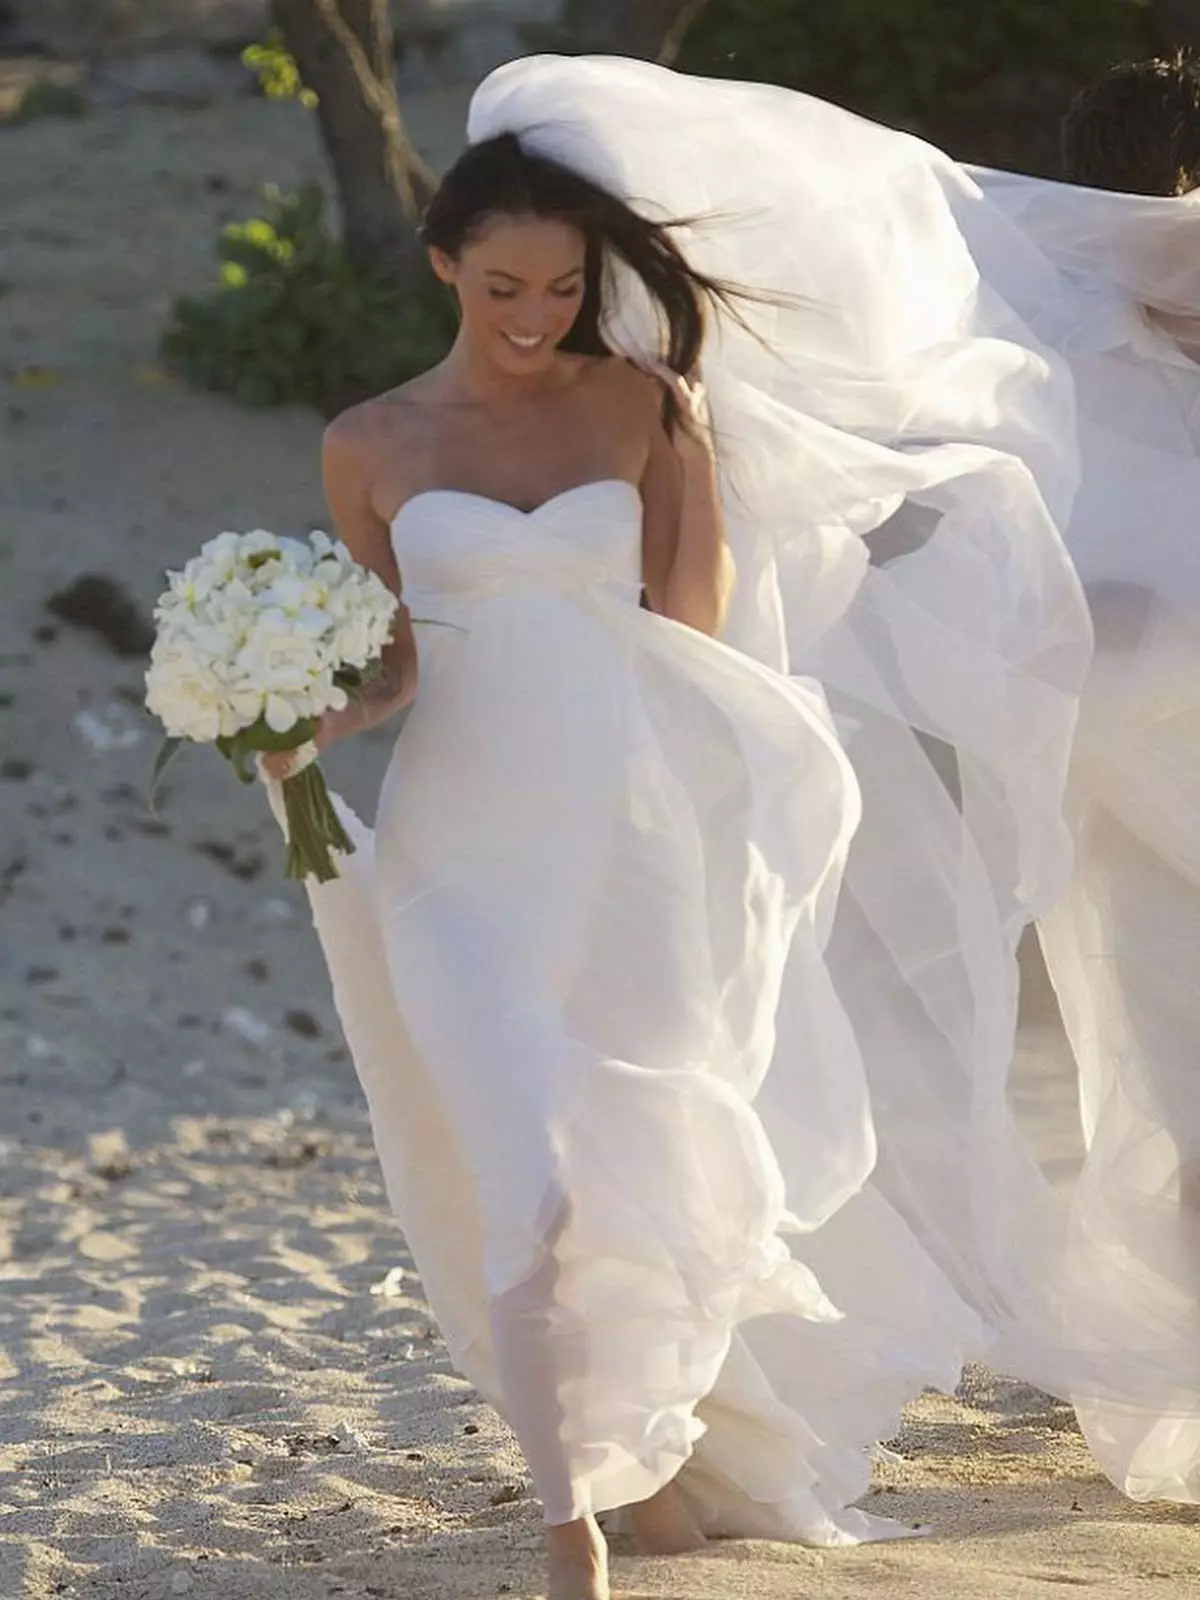 Hochzeitskleid Megan Fox